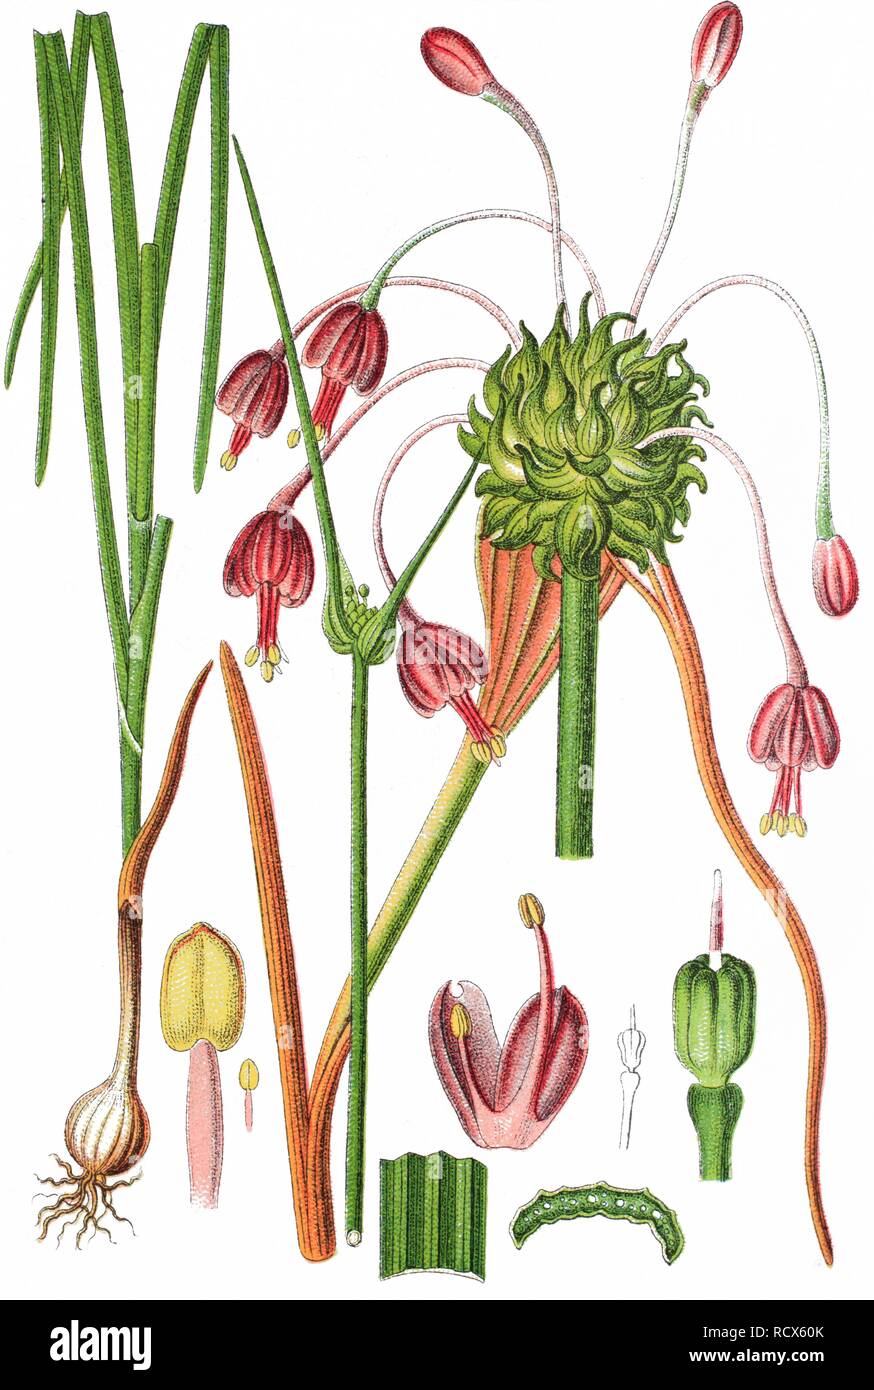 Knoblauch Gekielt (Allium carinatum), Heilpflanzen, nützliche Pflanze, chromolithograph, 1876 Stockfoto